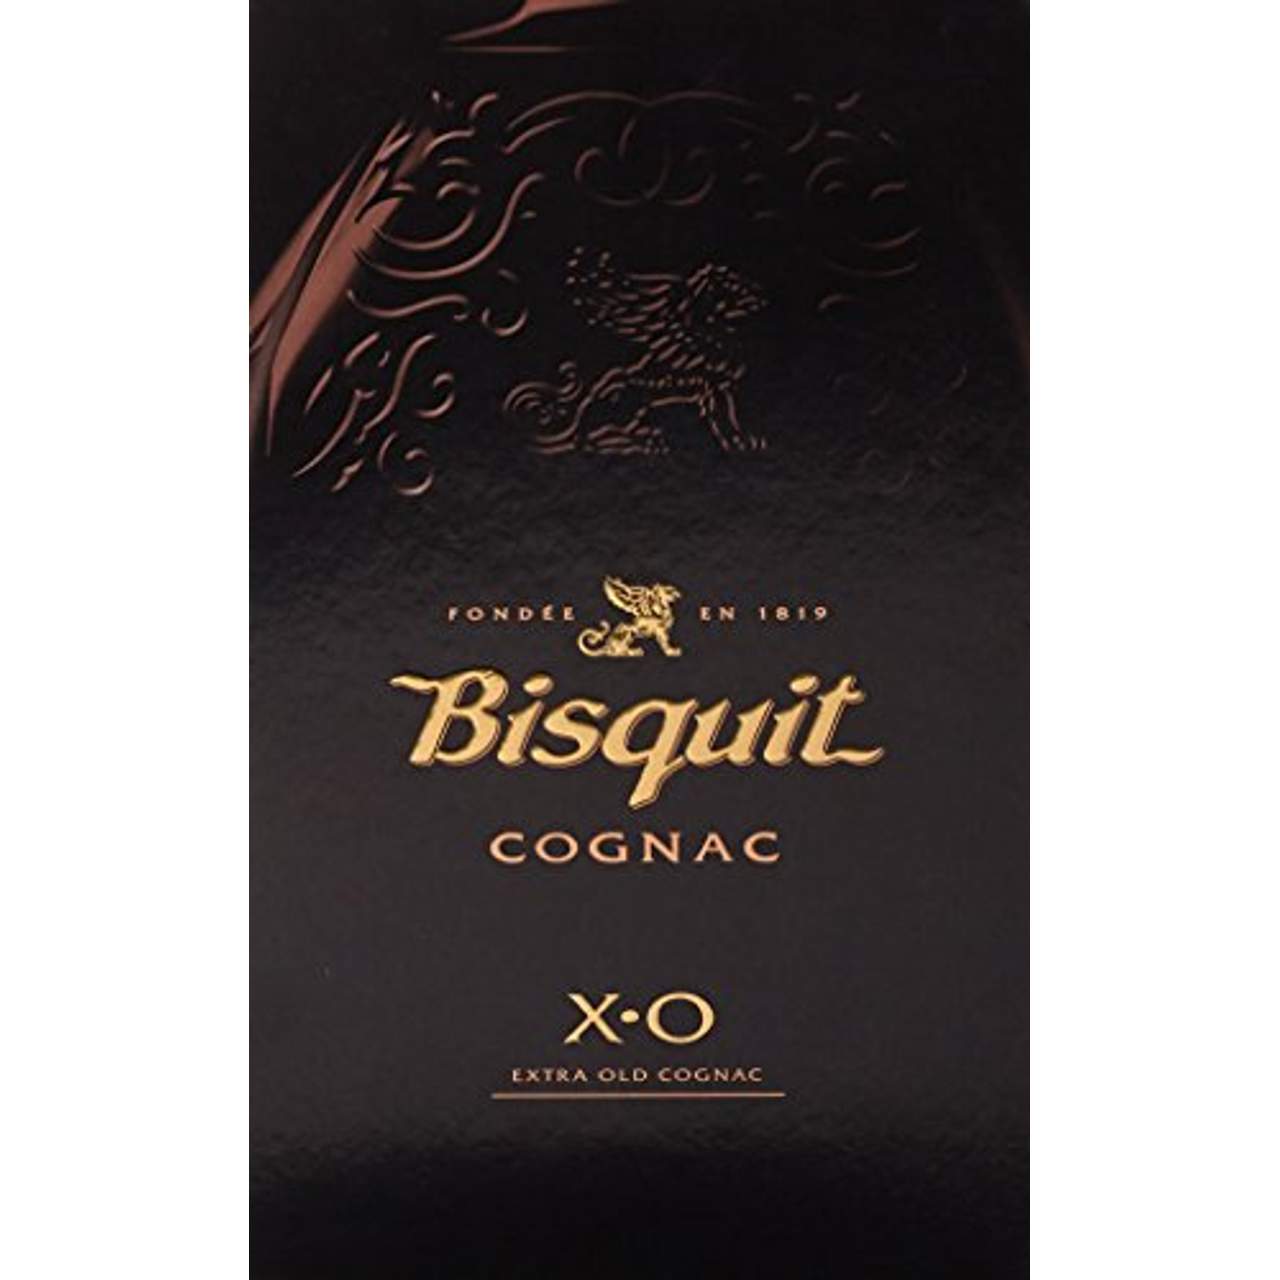 Bisquit Dubouché et Cie XO Cognac